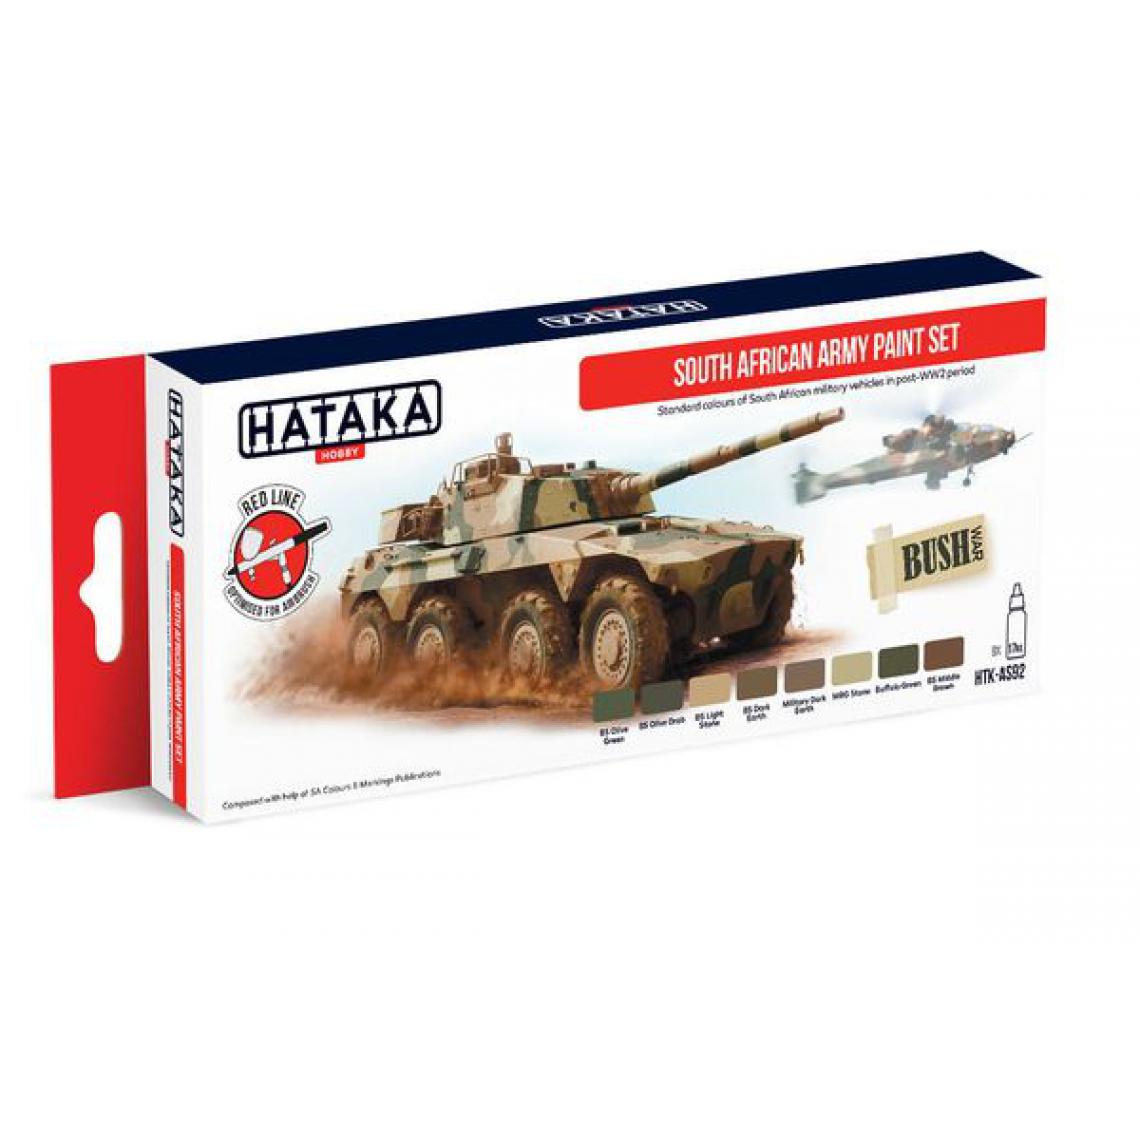 Hataka - Red Line Set (6 pcs) South African Army paint set - HATAKA - Accessoires et pièces